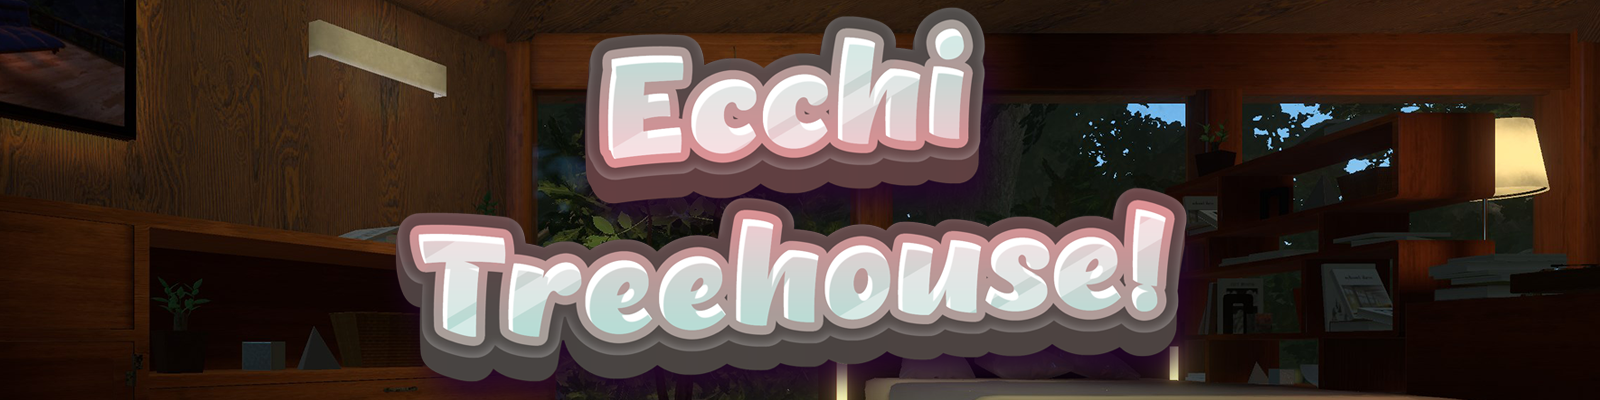 Ecchi Treehouse!